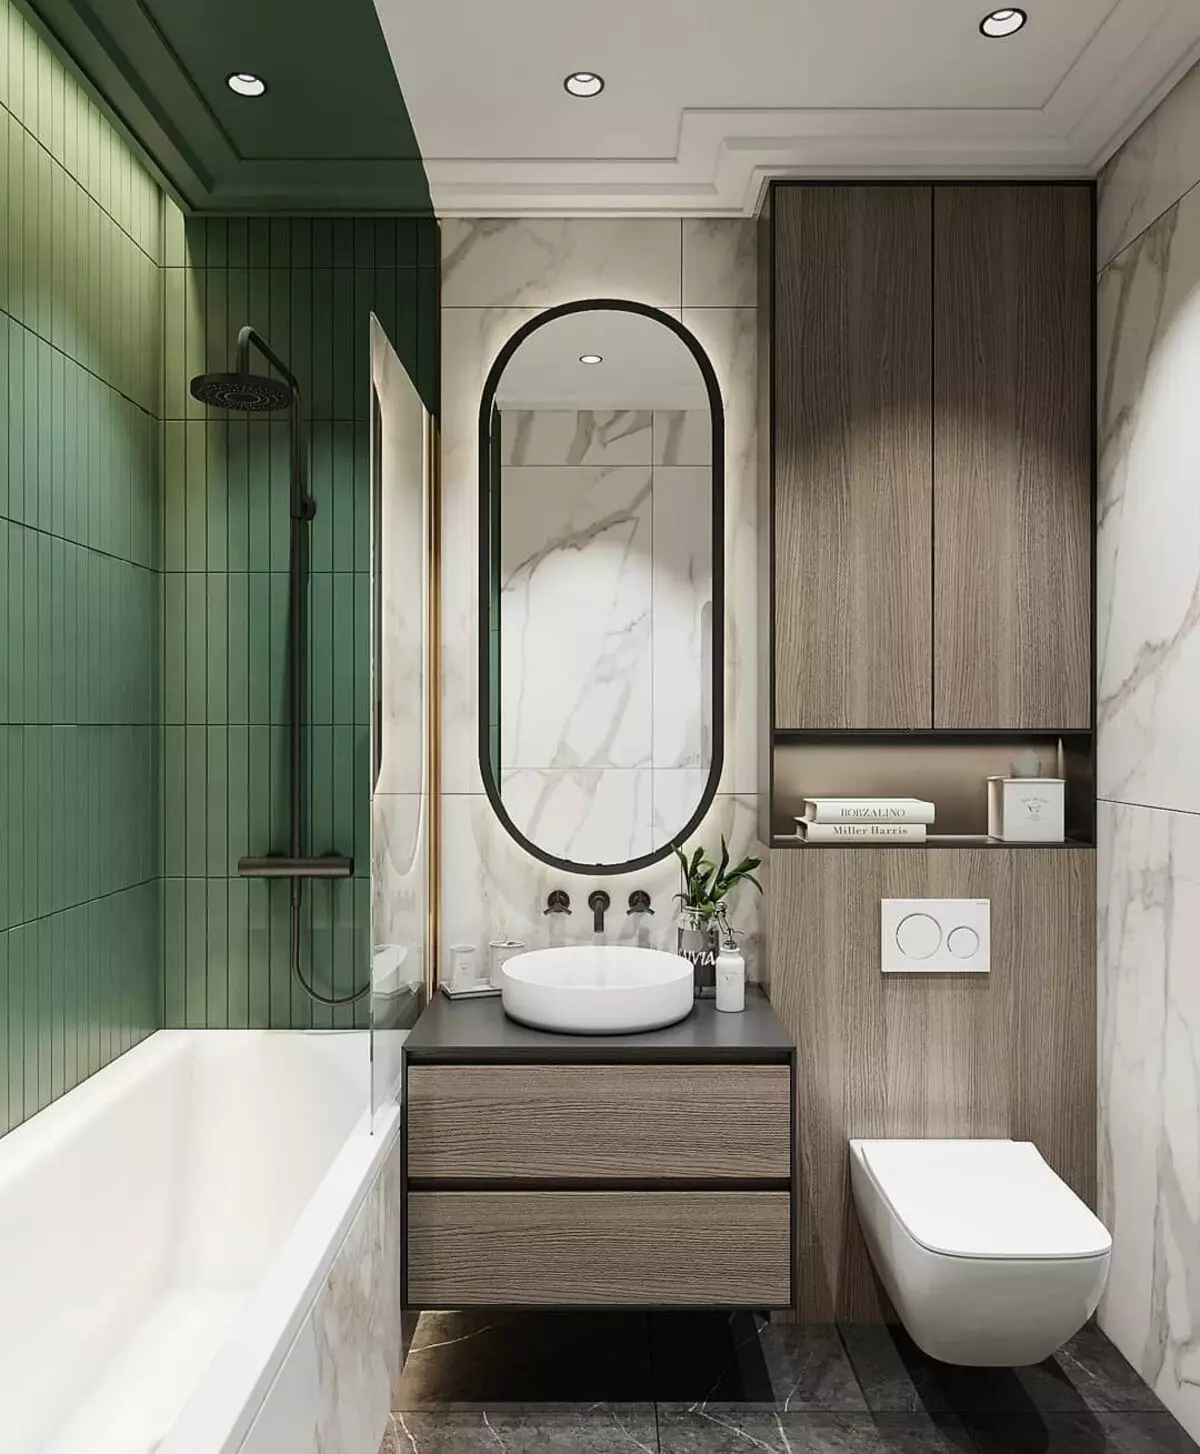 עיצוב אמבטיה בשילוב עם שירותים מרובע 3. M (76 תמונות): עיצוב פנים חדר אמבטיה עם מכונת כביסה, הנחת חדר קטן 10068_71